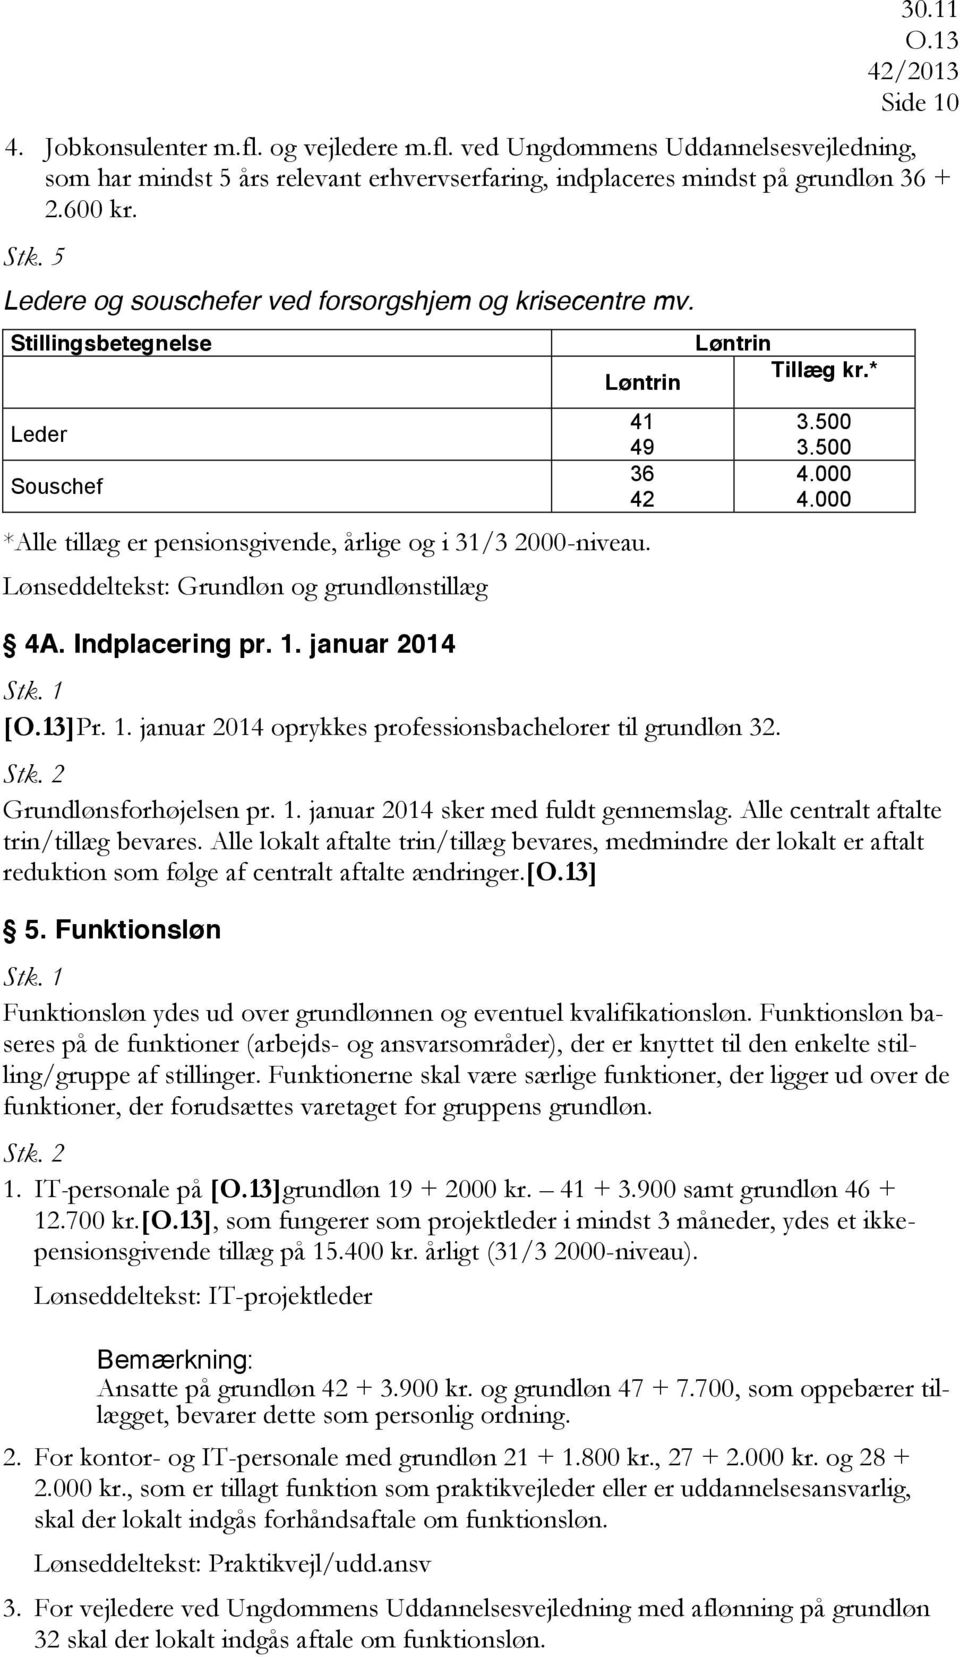 Lønseddeltekst: Grundløn og grundlønstillæg 4A. Indplacering pr. 1. januar 2014 41 49 36 42 []Pr. 1. januar 2014 oprykkes professionsbachelorer til grundløn 32. Løntrin Tillæg kr.* 3.500 3.500 4.